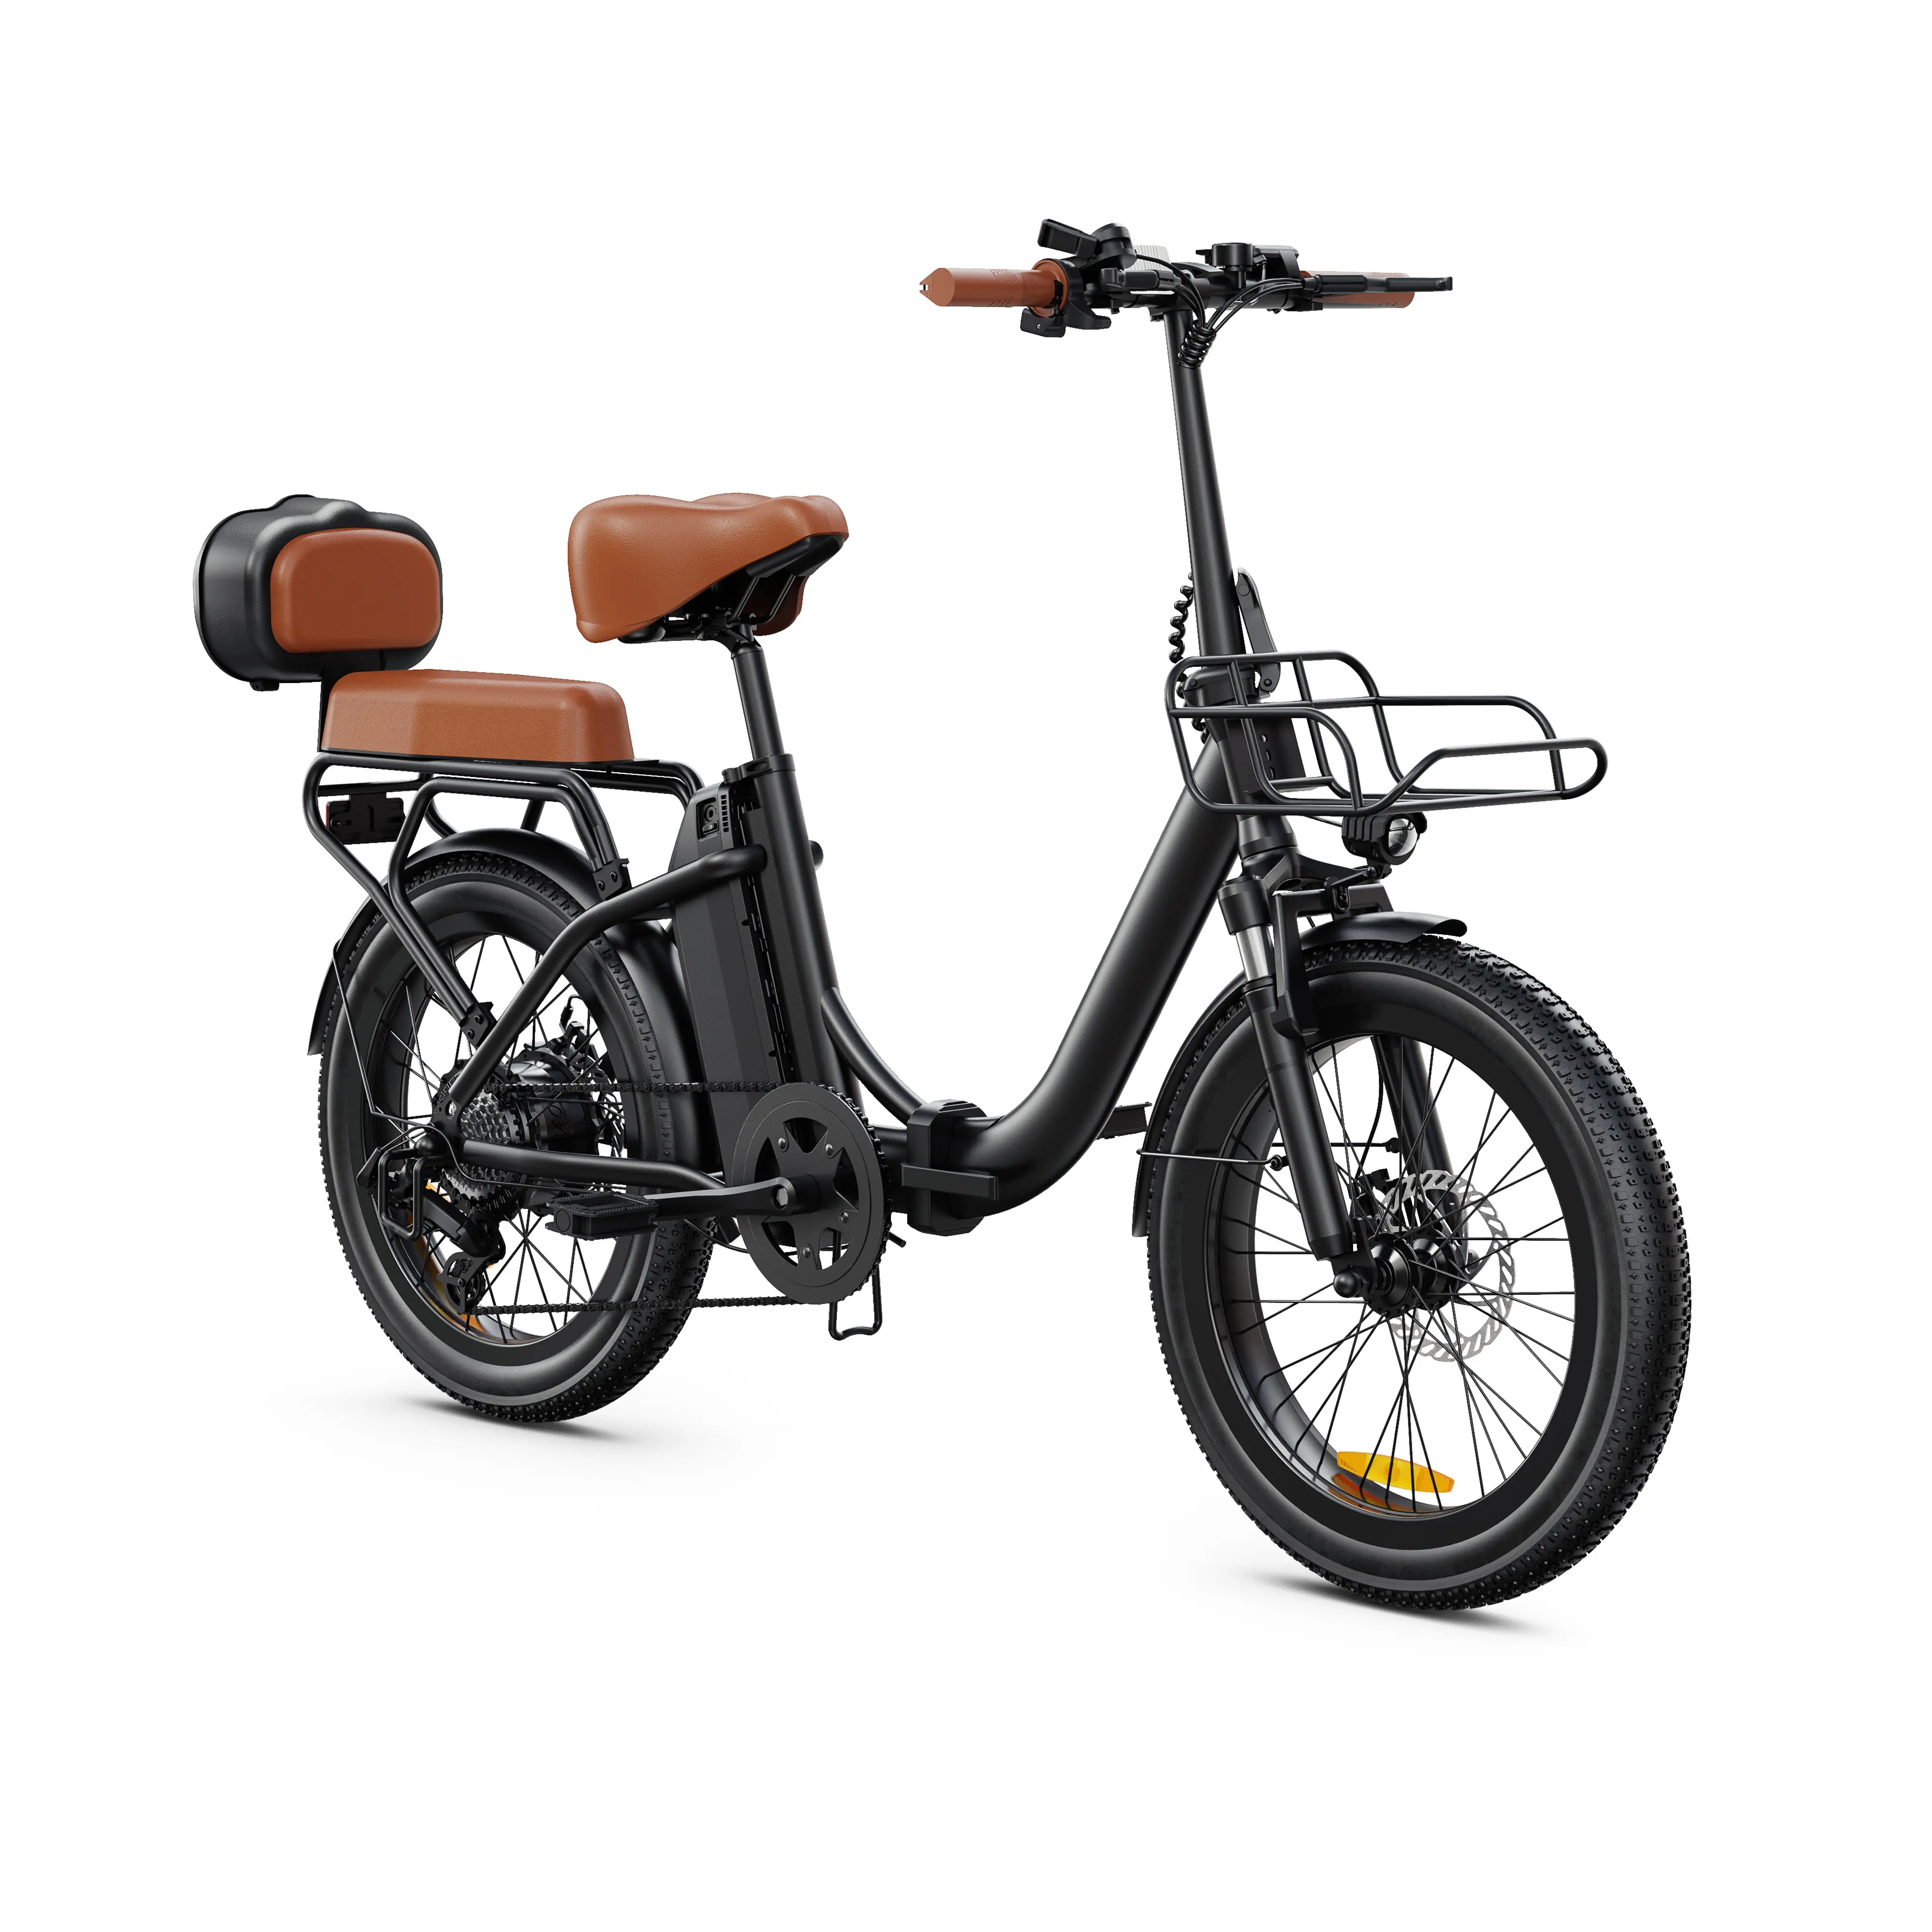 ODM&OEM 500w फैट टायर इलेक्ट्रिक बड़ा पहिया बाइक 20 इंच ऑफ रोड ई बाइक कीमतें मोटर बीच क्रूजर चॉपर इलेक्ट्रिक साइकिल साइकिल